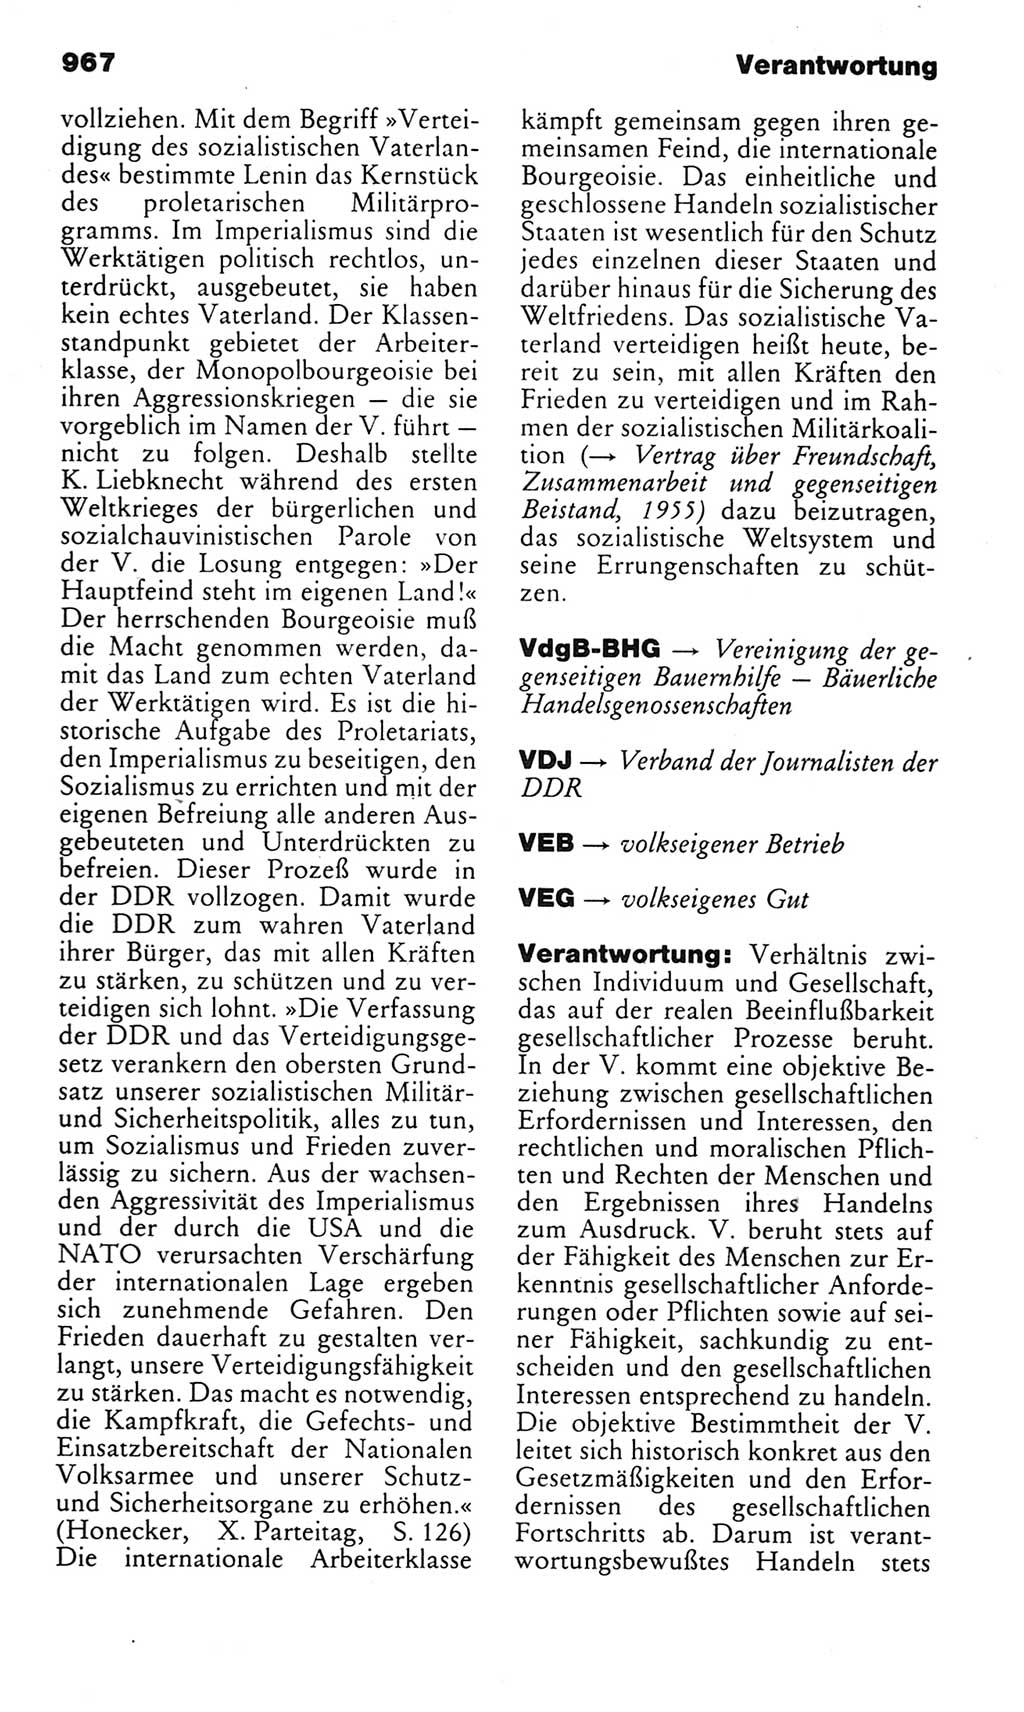 Kleines politisches Wörterbuch [Deutsche Demokratische Republik (DDR)] 1983, Seite 967 (Kl. pol. Wb. DDR 1983, S. 967)